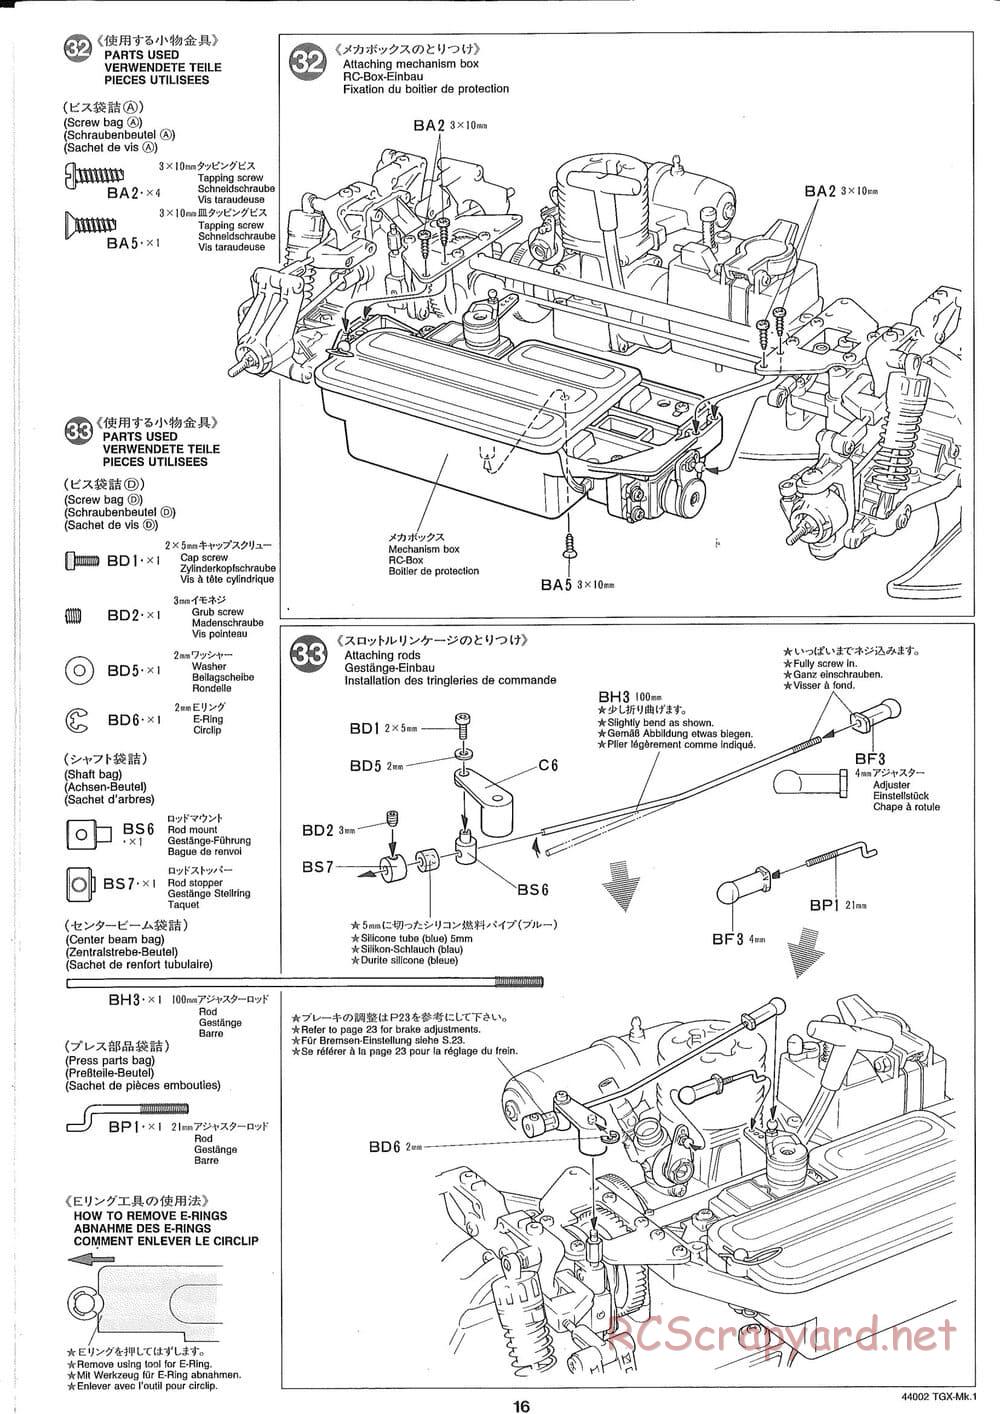 Tamiya - TGX Mk.1 TS Chassis Chassis - Manual - Page 16